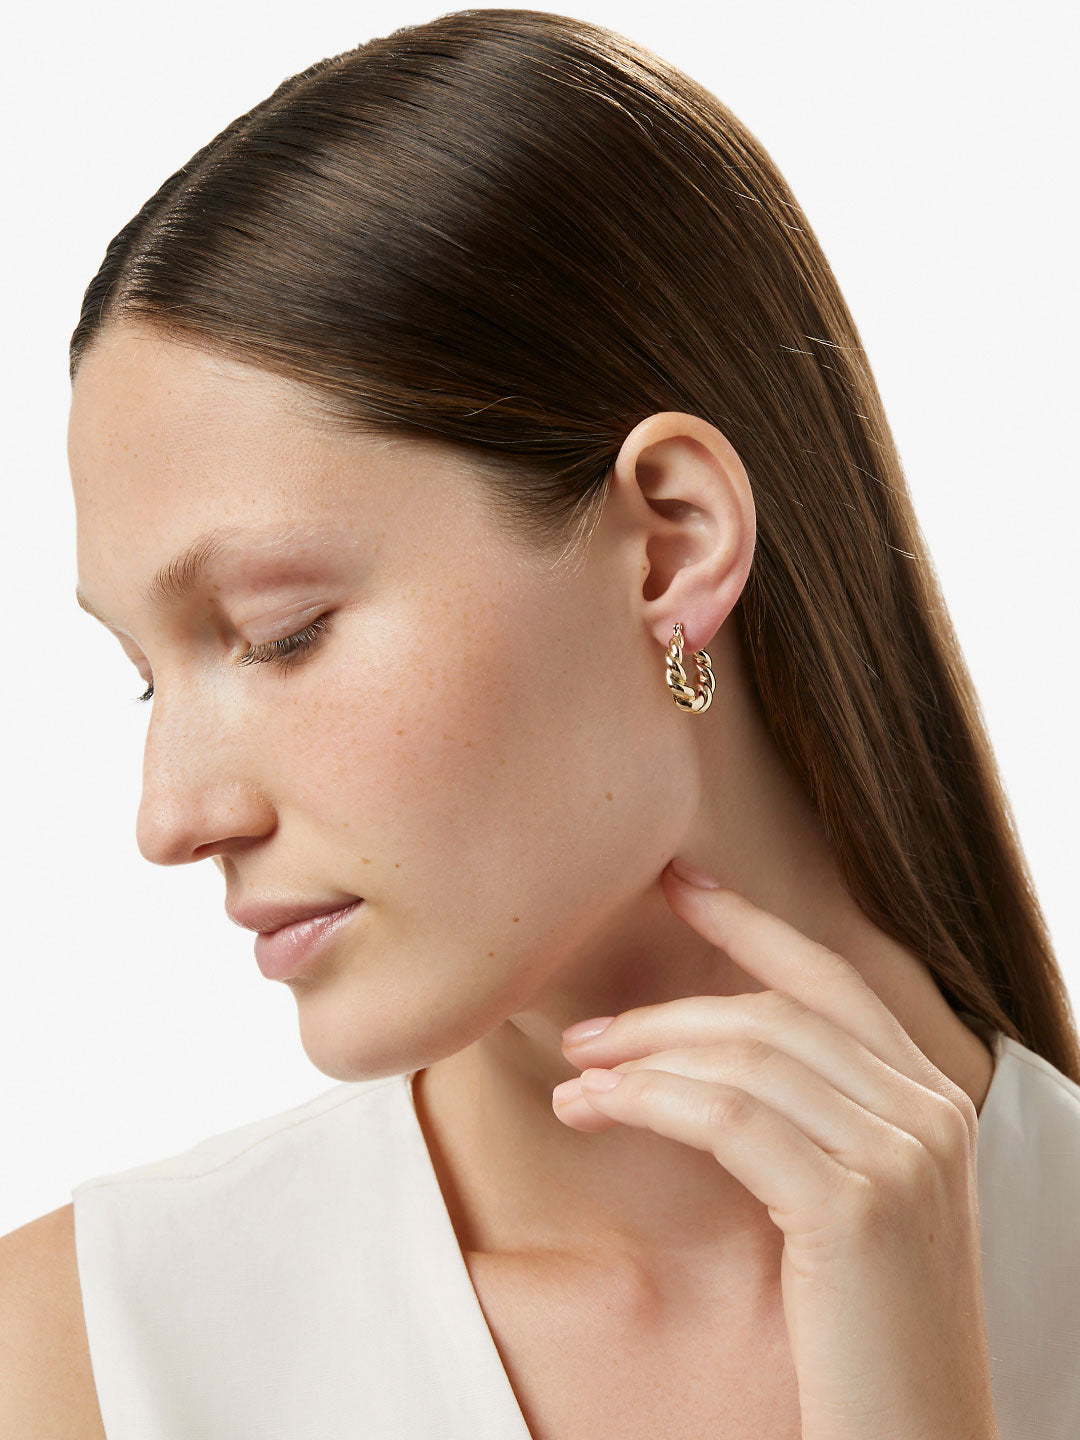 Ana Luisa Jewelry Hoop Earrings Twisted Hoop Earrings Paris Gold